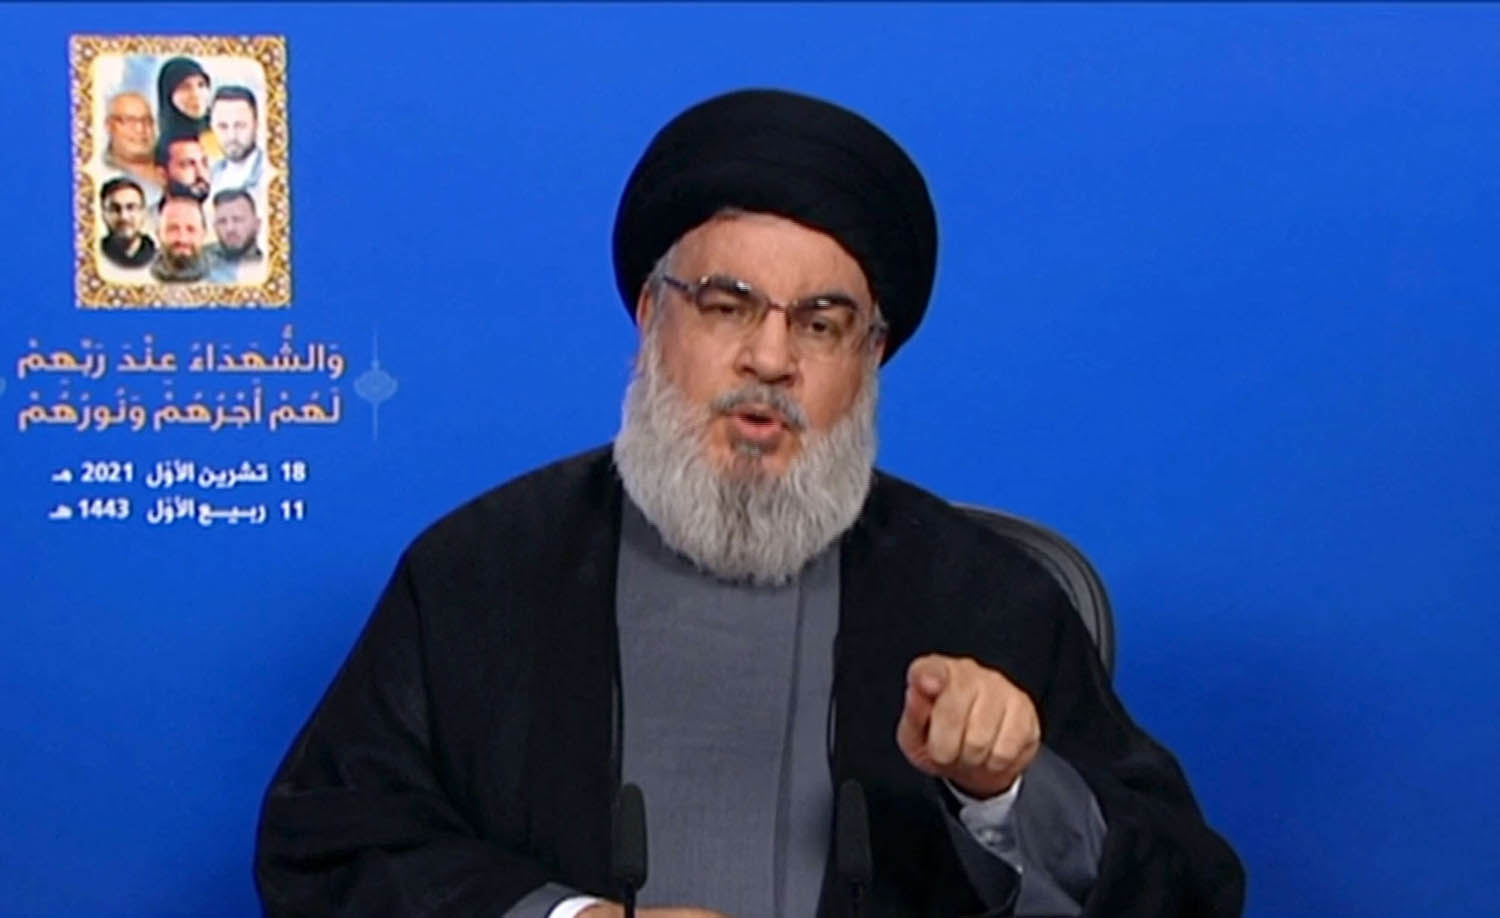 زعيم حزب الله حسن نصرالله يلقي كلمة مسجلة بمناسبة احداث بيروت